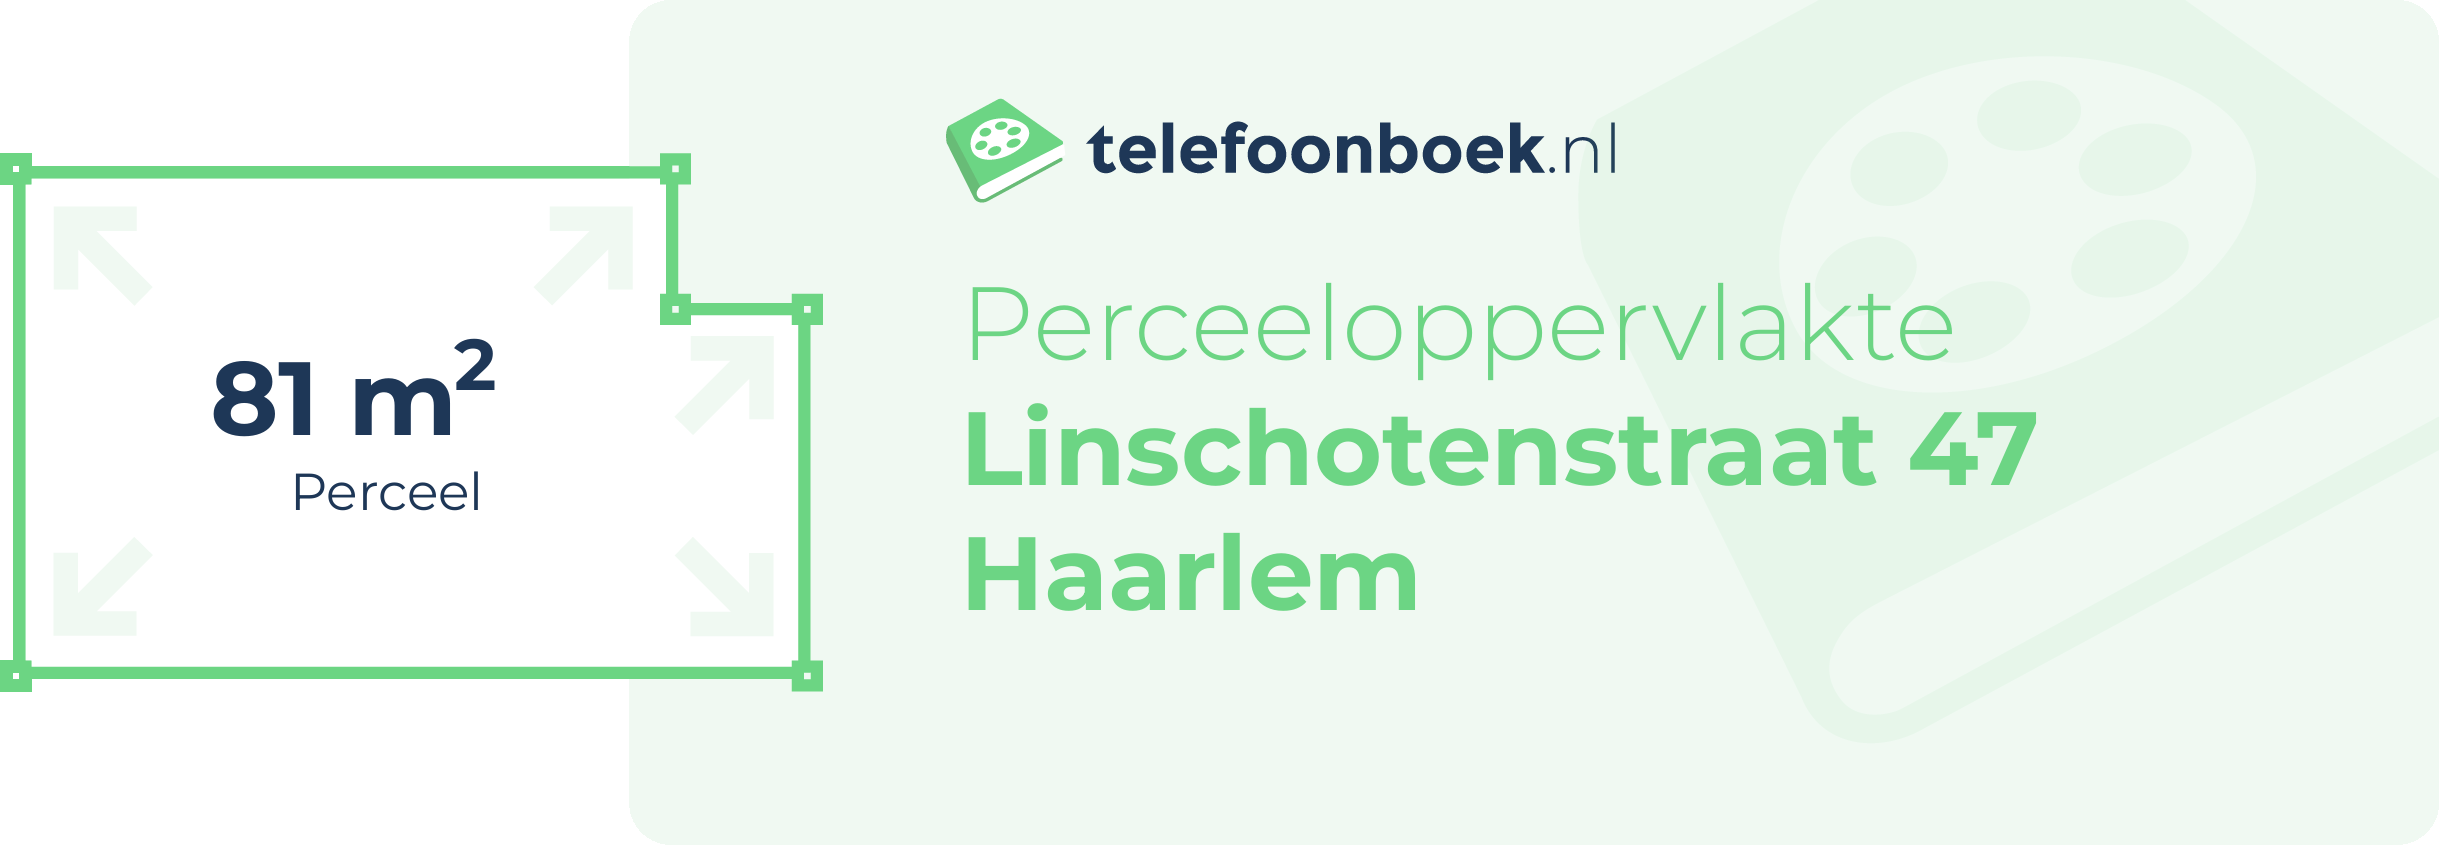 Perceeloppervlakte Linschotenstraat 47 Haarlem